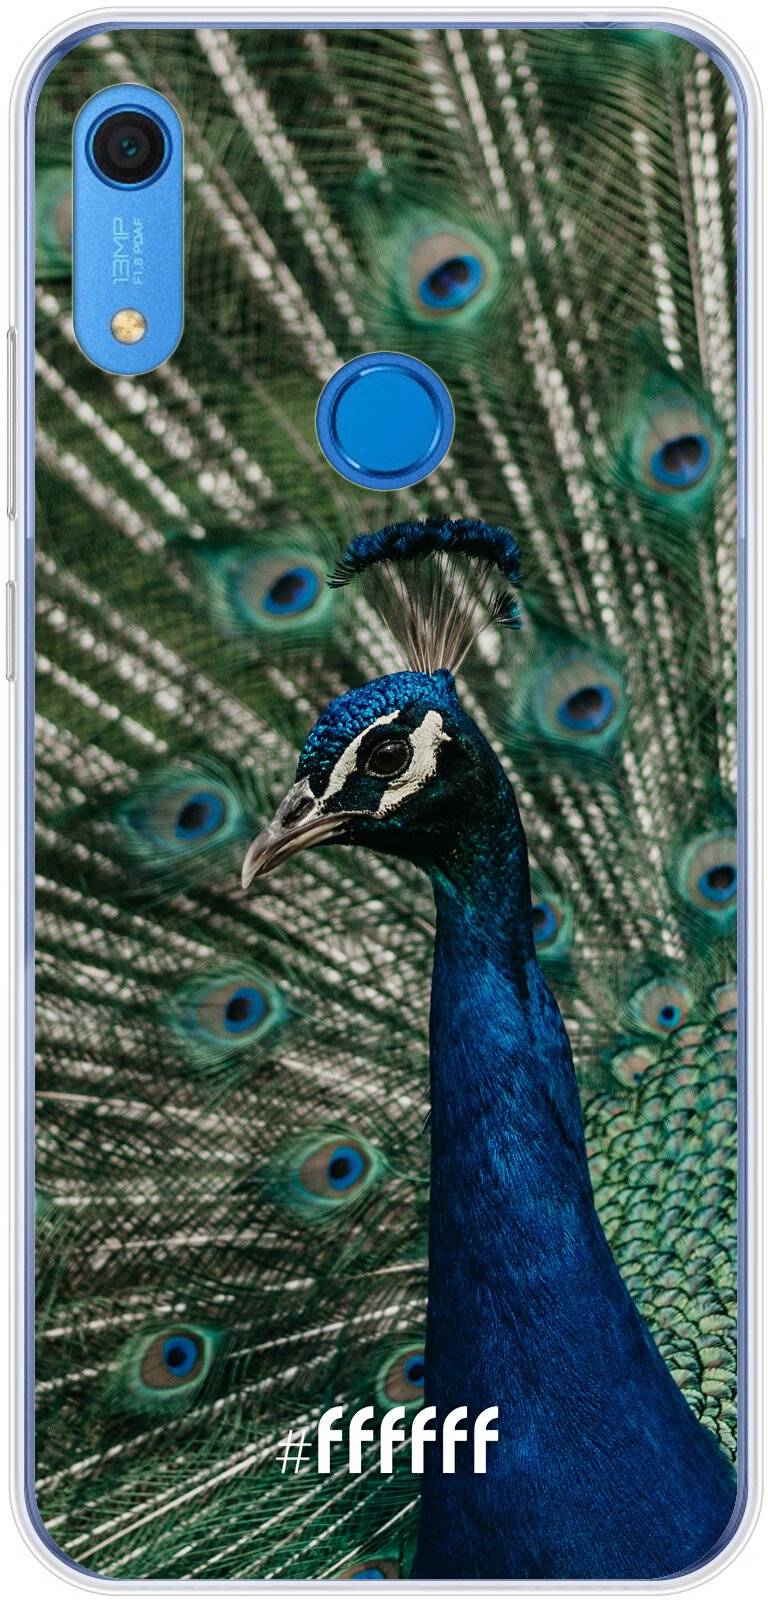 Peacock Y6s